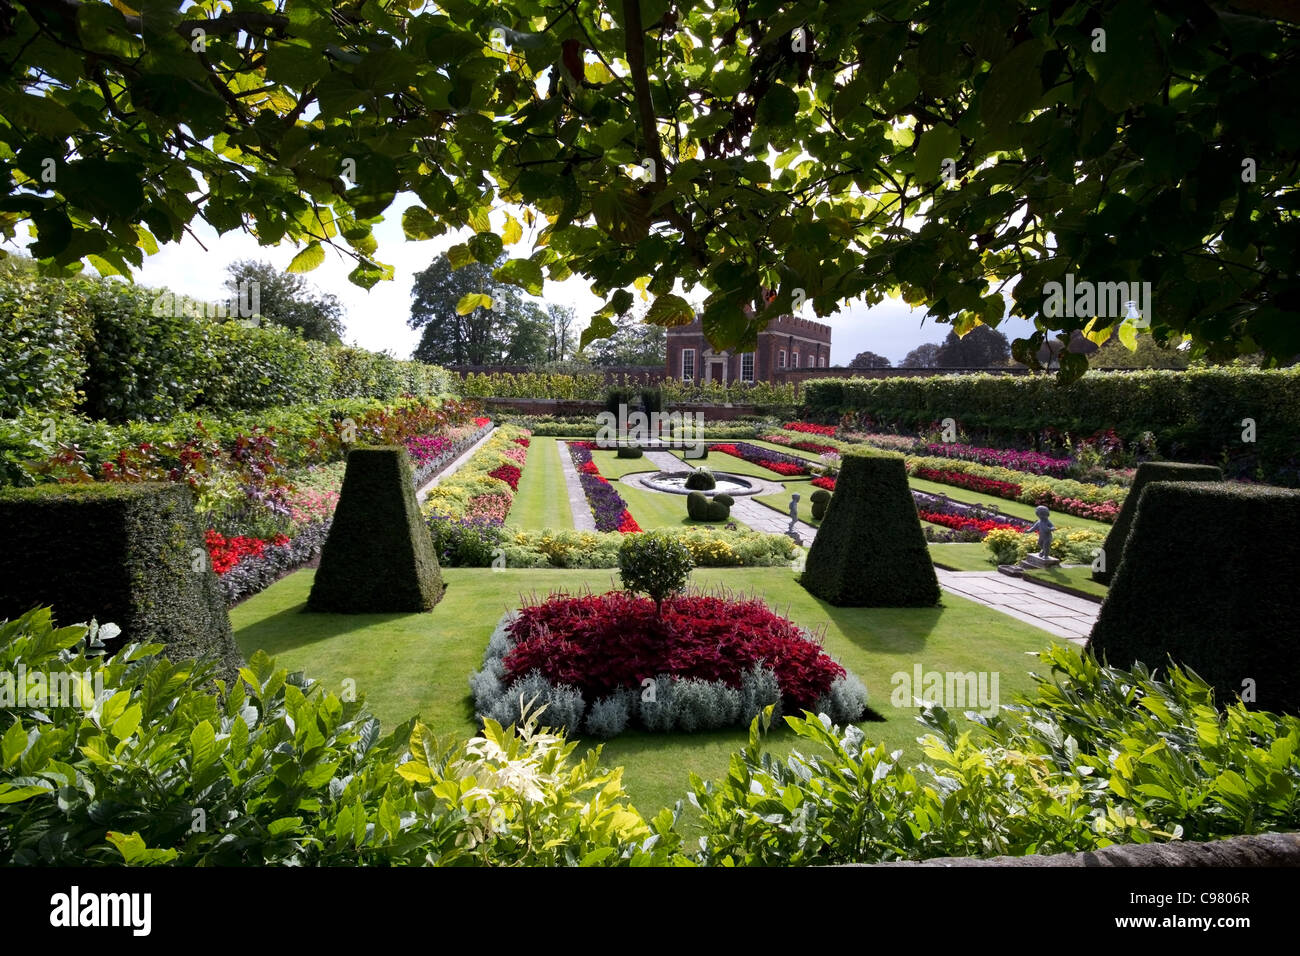 Sunken garden at Hampton Court Palace, London Stock Photo